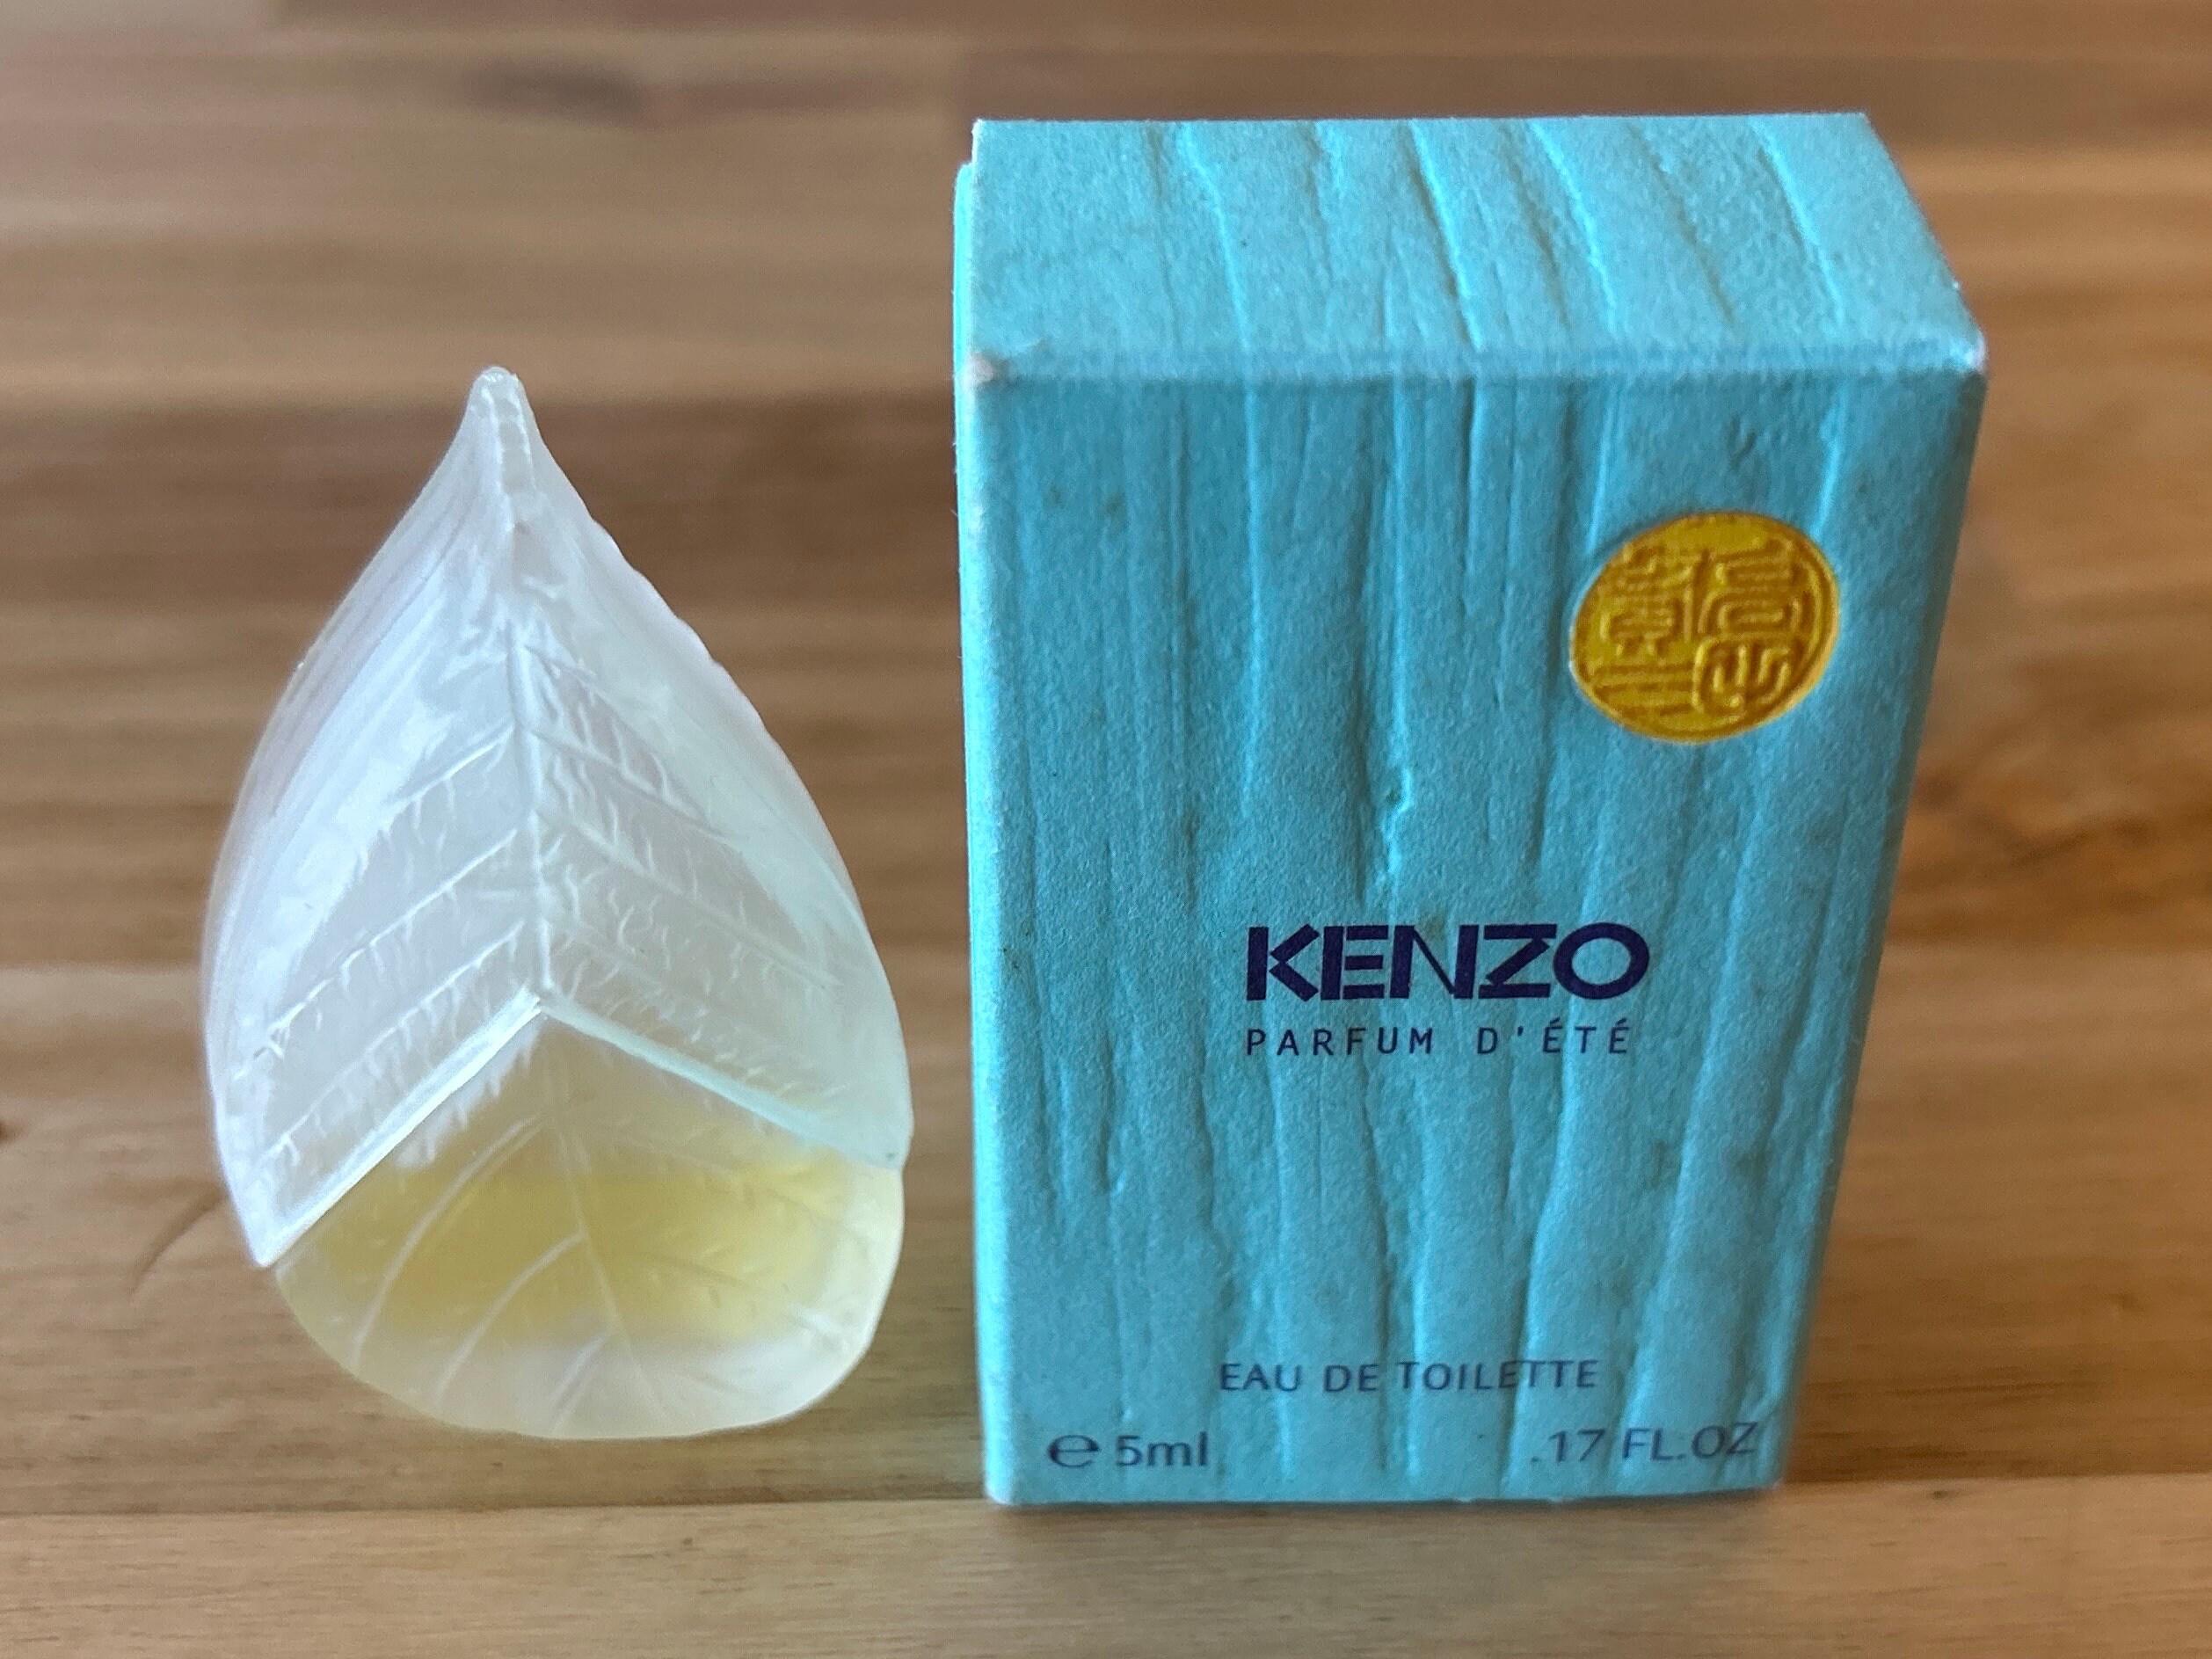 Kenzo Etsy Toilette Miniature Vintage Eau De - Parfum Dete 5ml Spray